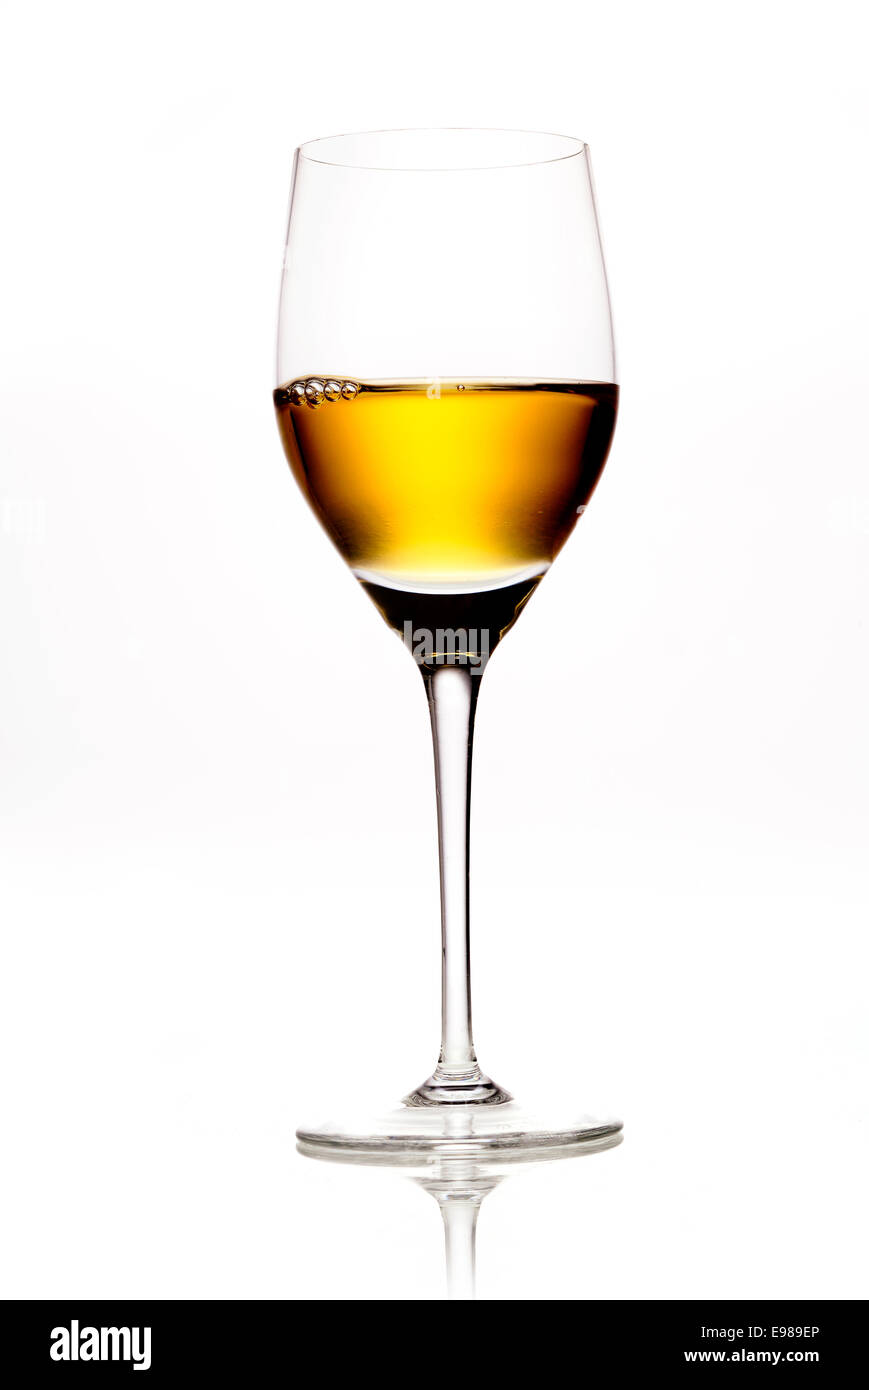 Elegante Weinglas voll von Bernstein gefärbt, Wein oder Sherry auf weißem Hintergrund mit reflecton Stockfoto